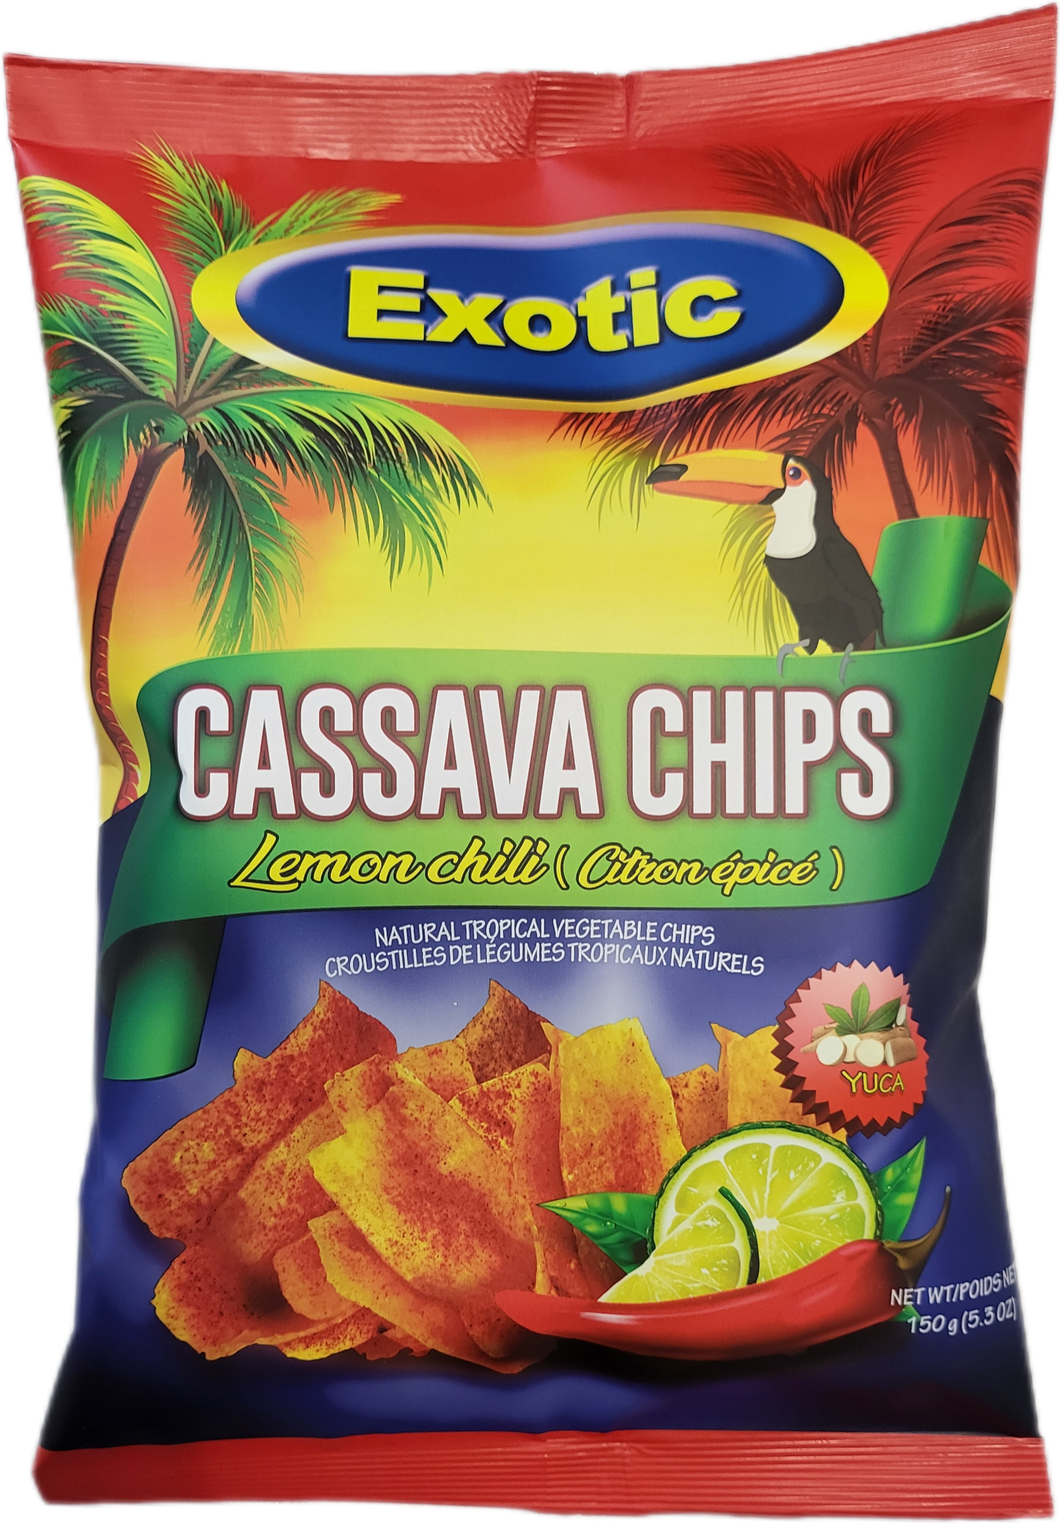 Cassava Chips - Lemon Chili